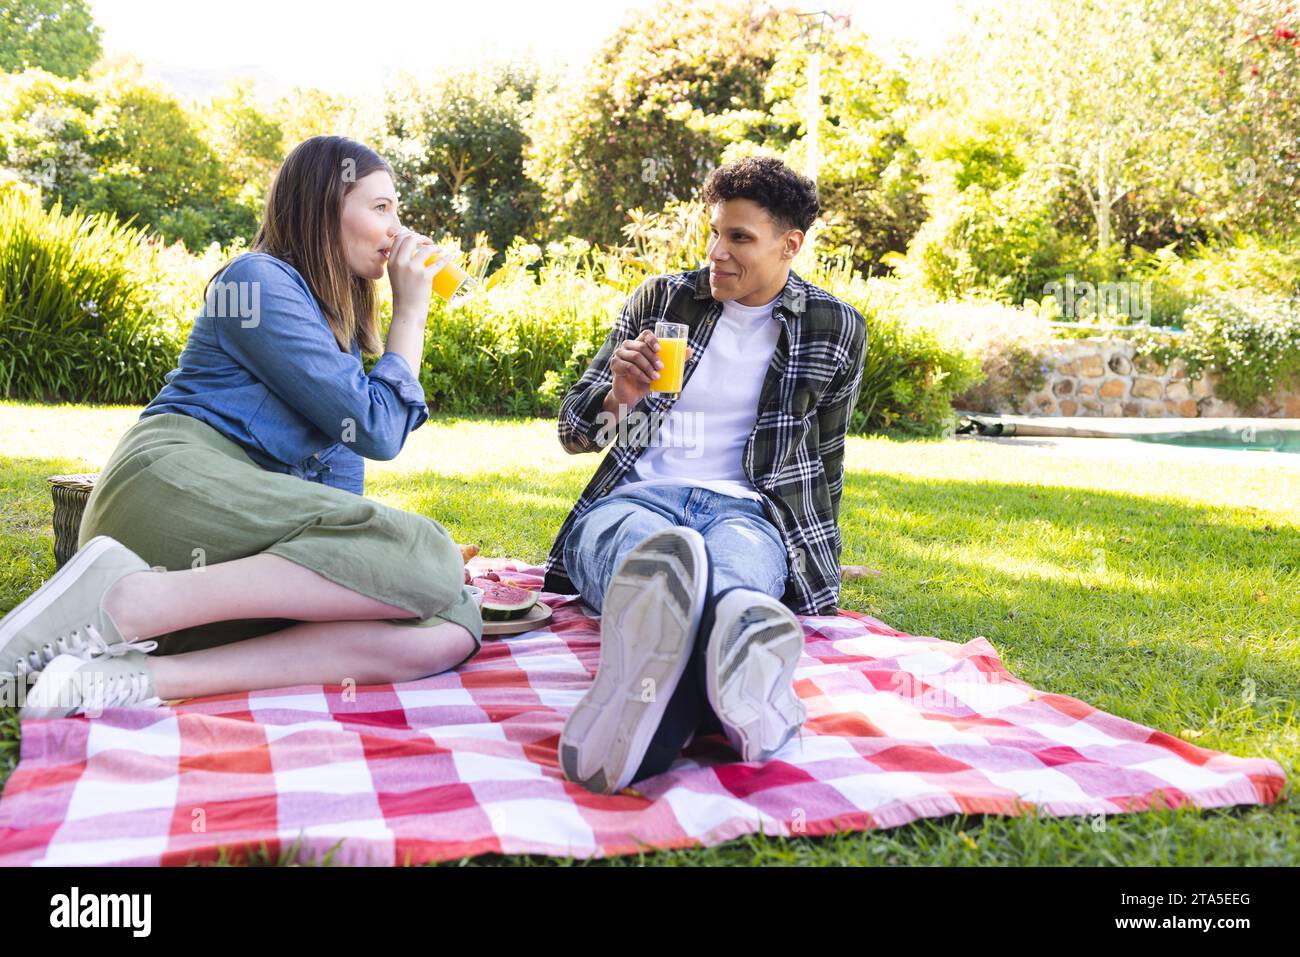 Coppia felice e variegata seduta su una coperta, picnic, succo di frutta nel giardino soleggiato, spazio fotocopie. All'aperto, espressione, tempo libero, amore, insieme, Foto Stock